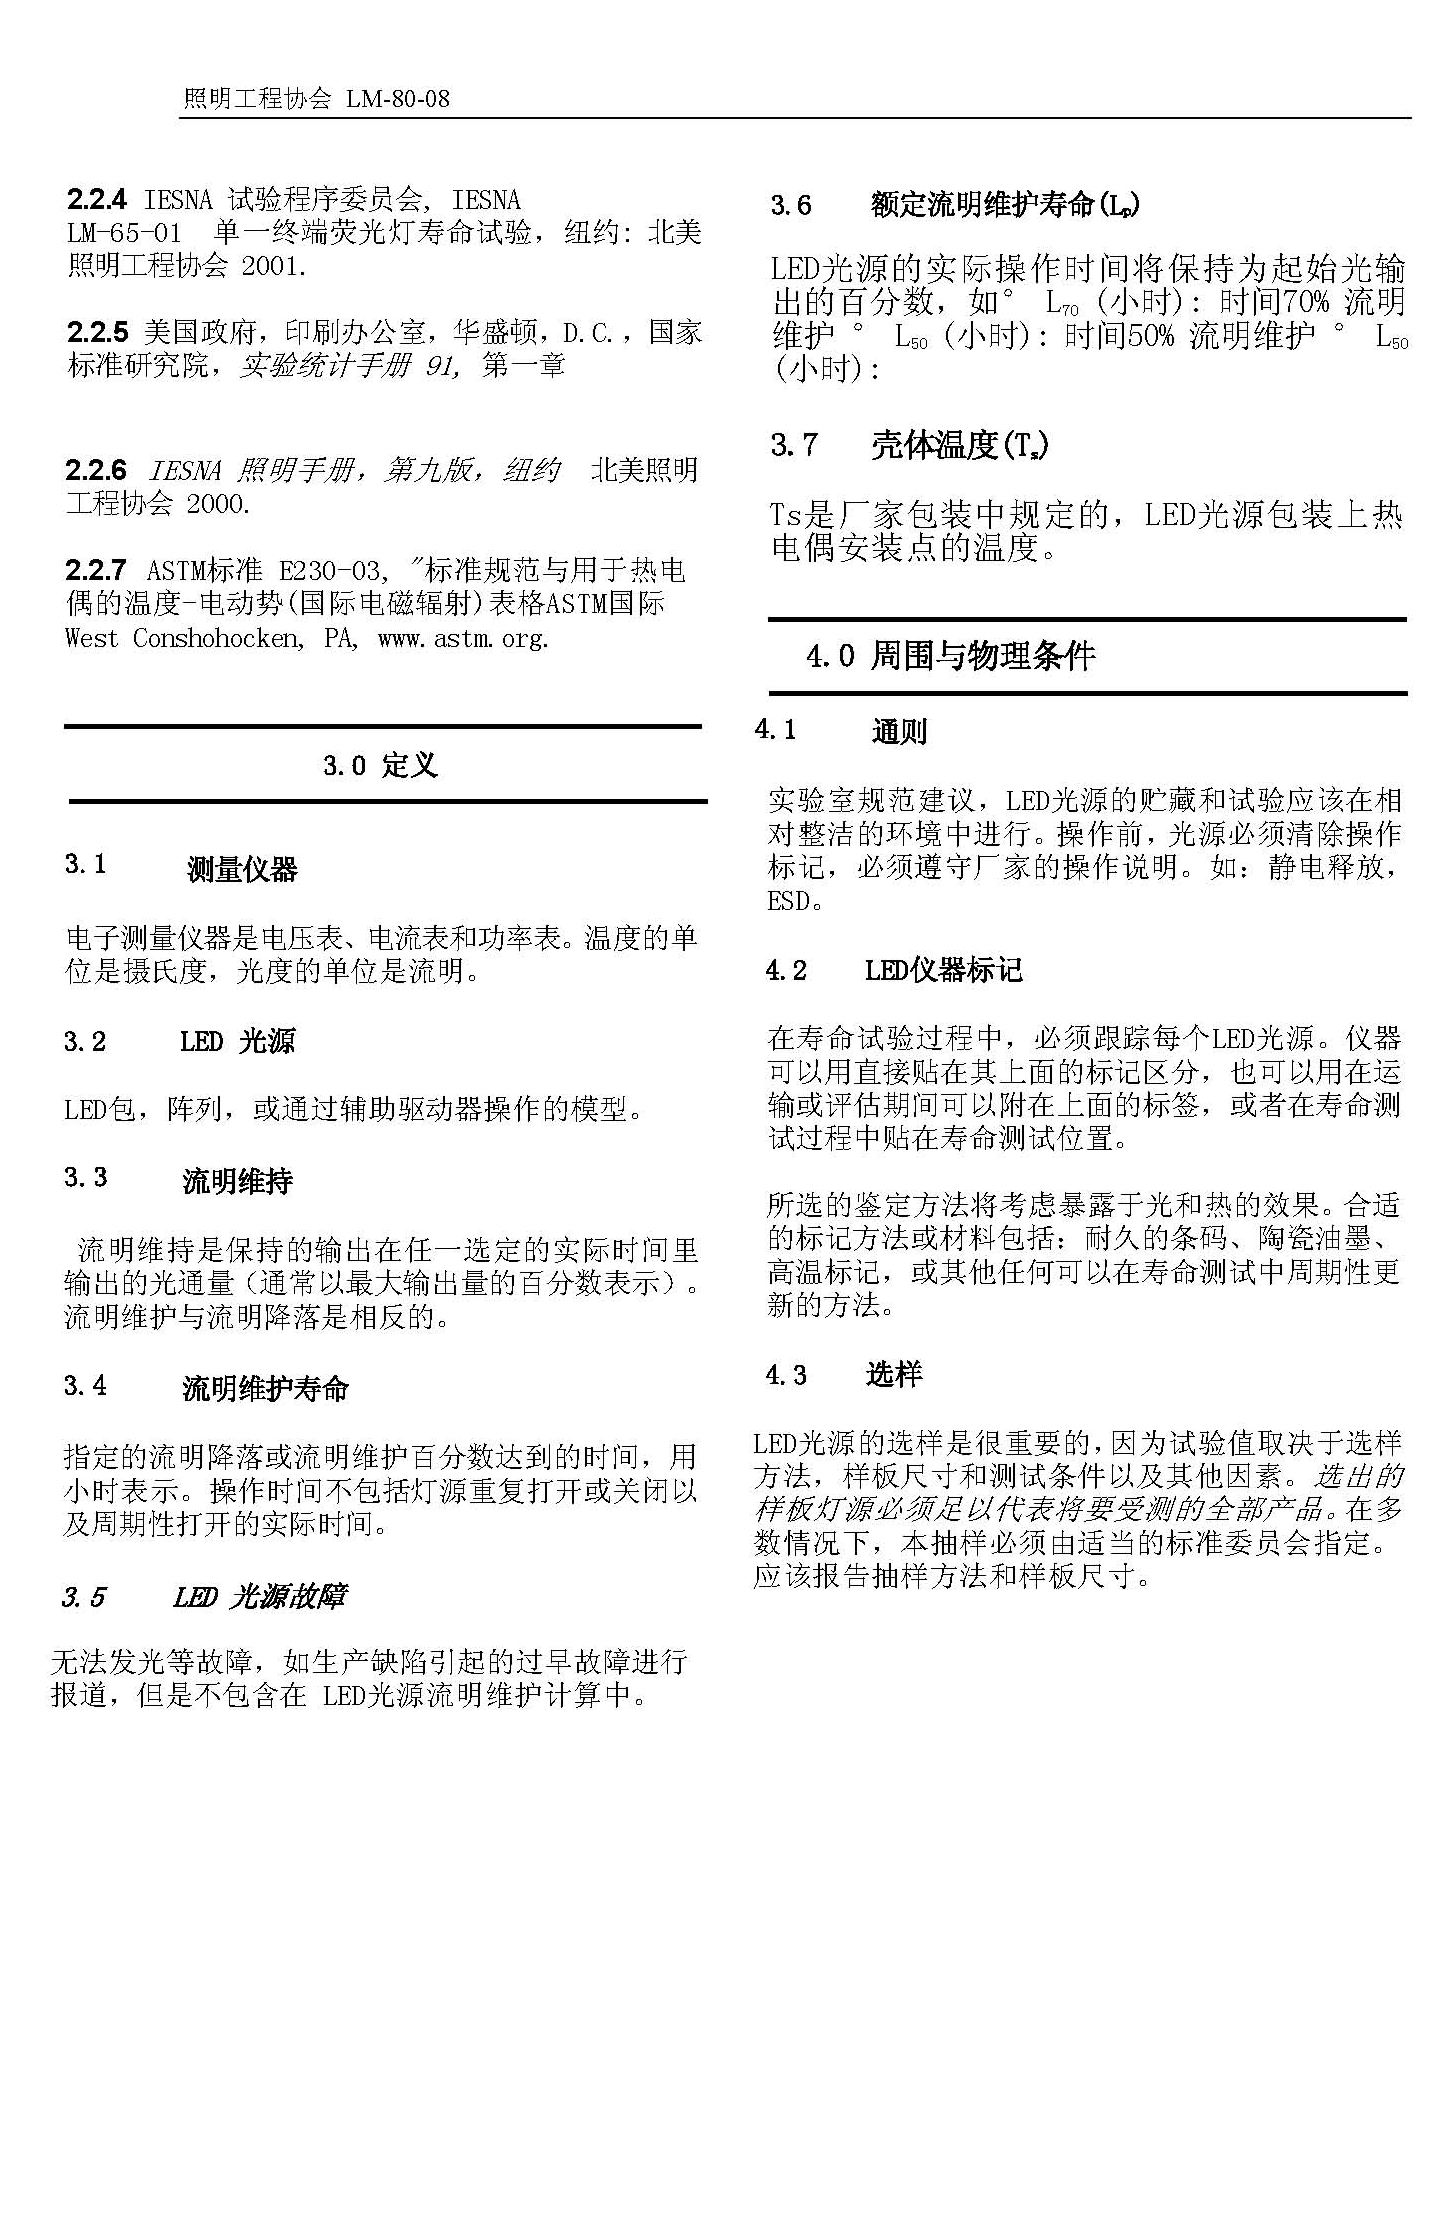 LM-80-08标准中文版